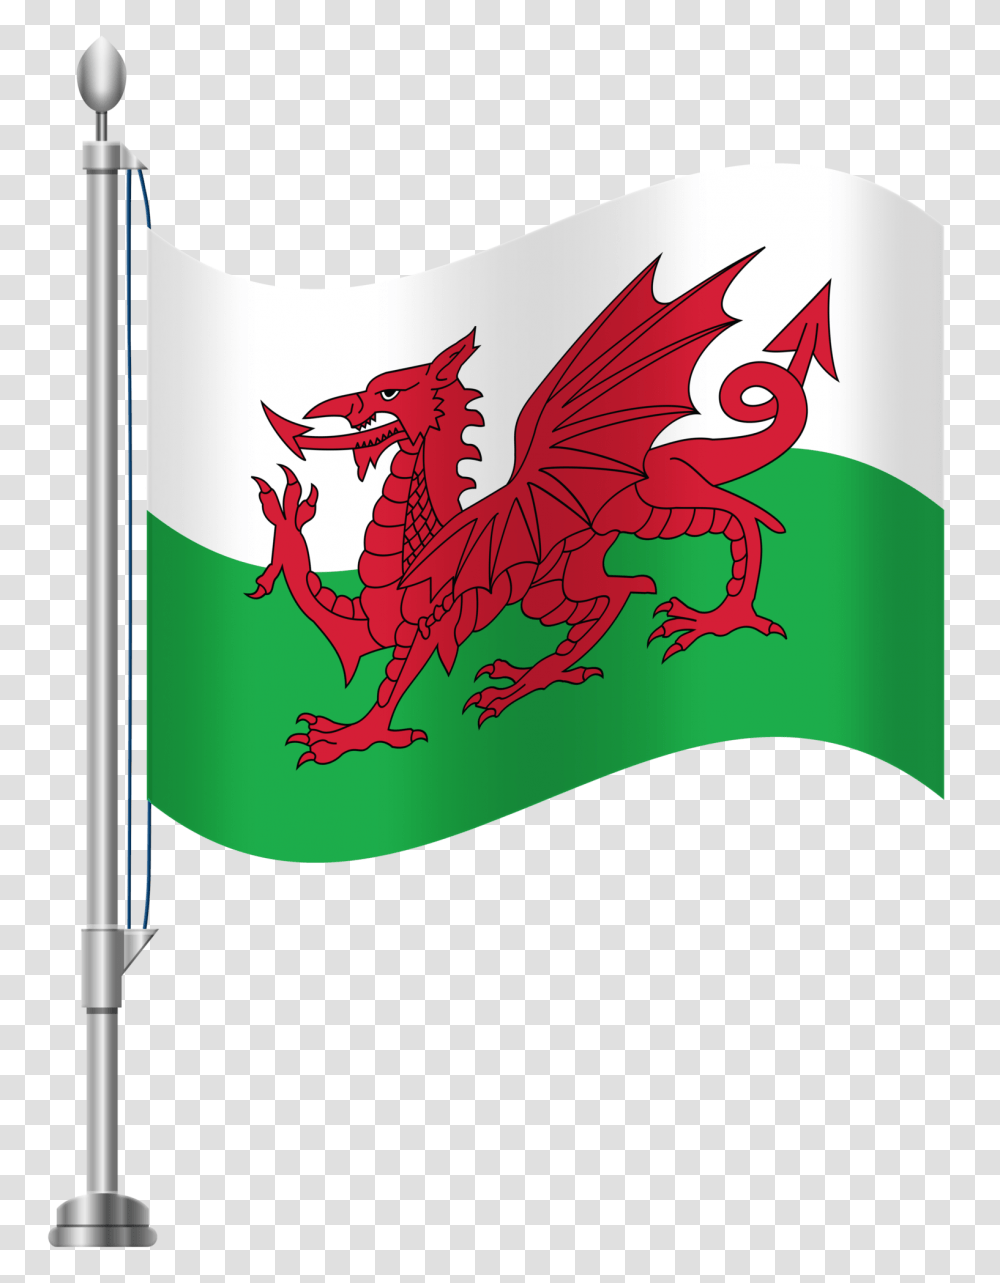 Wales Flag Clip Art, Apparel, Label Transparent Png